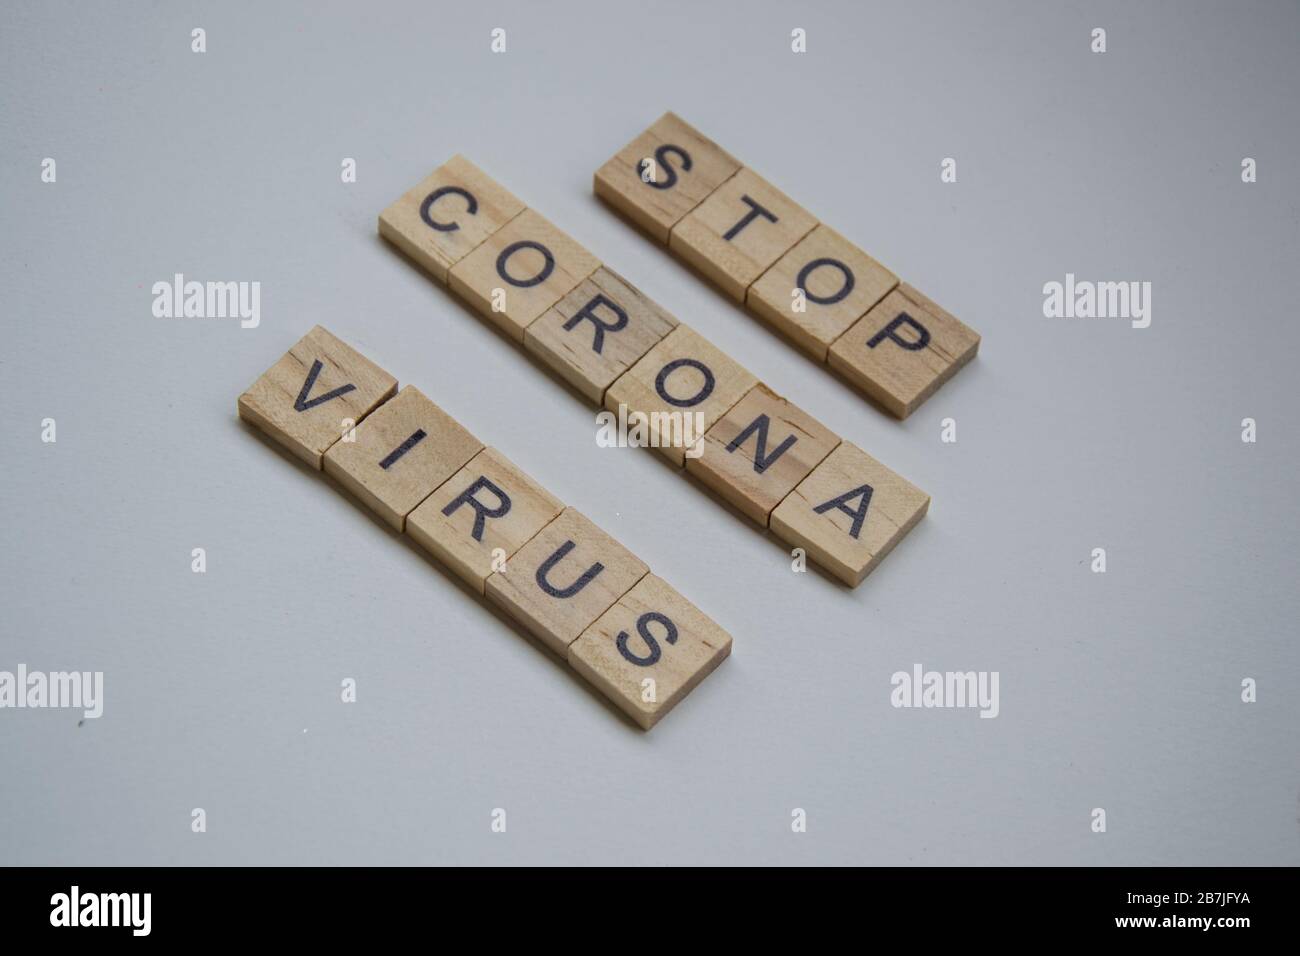 Des blocs de bois carrés avec les lettres ARRÊTENT LE VIRUS CORONA, isolé sur fond blanc, pandémie de covid-10, éclosion du virus de la couronne, santé et médical Banque D'Images